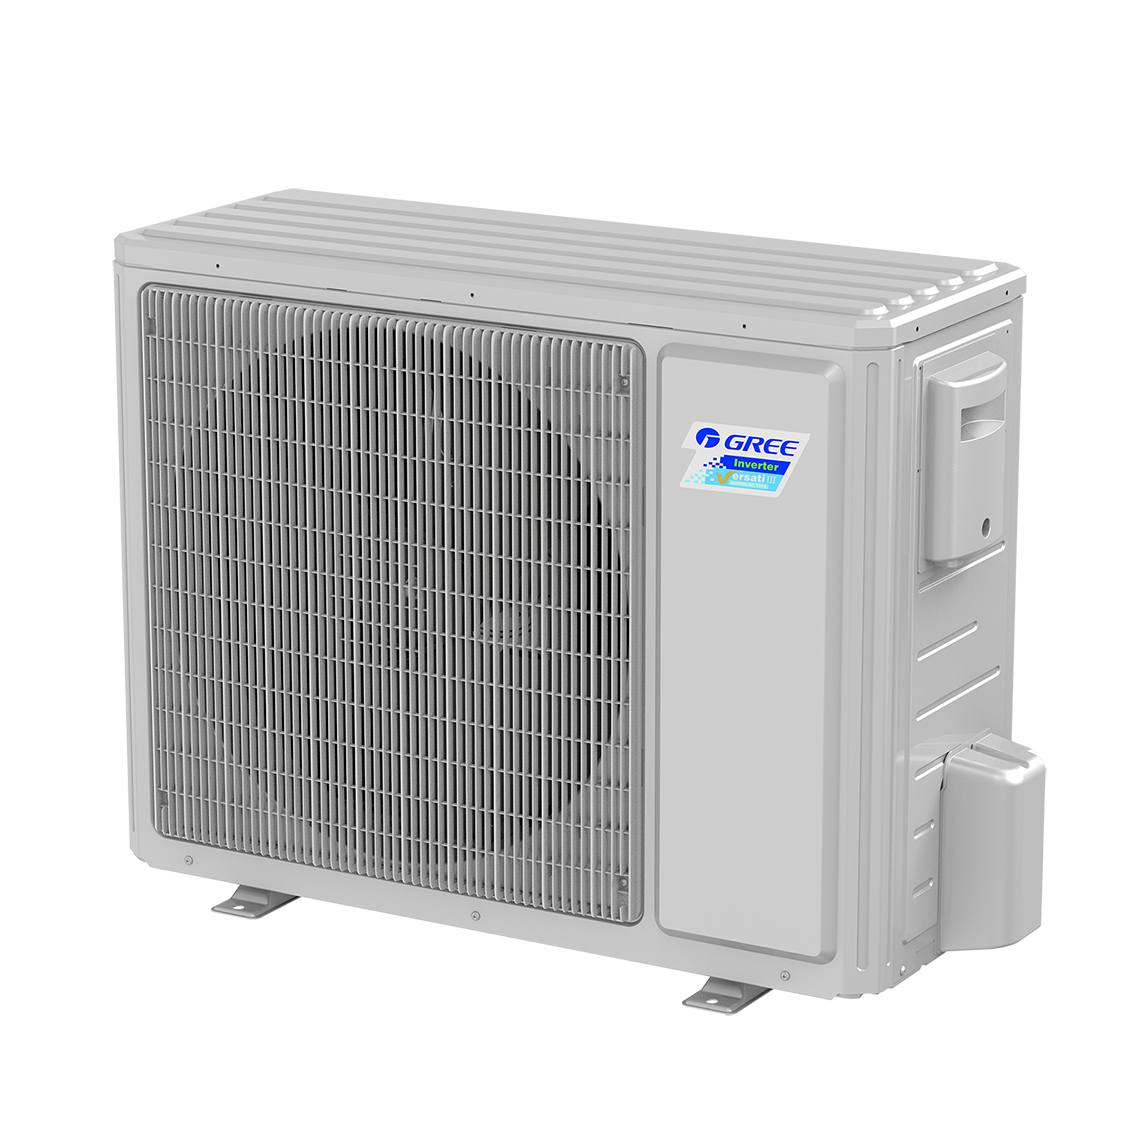 Versati III Multi-functional Air to Water Heat Pump